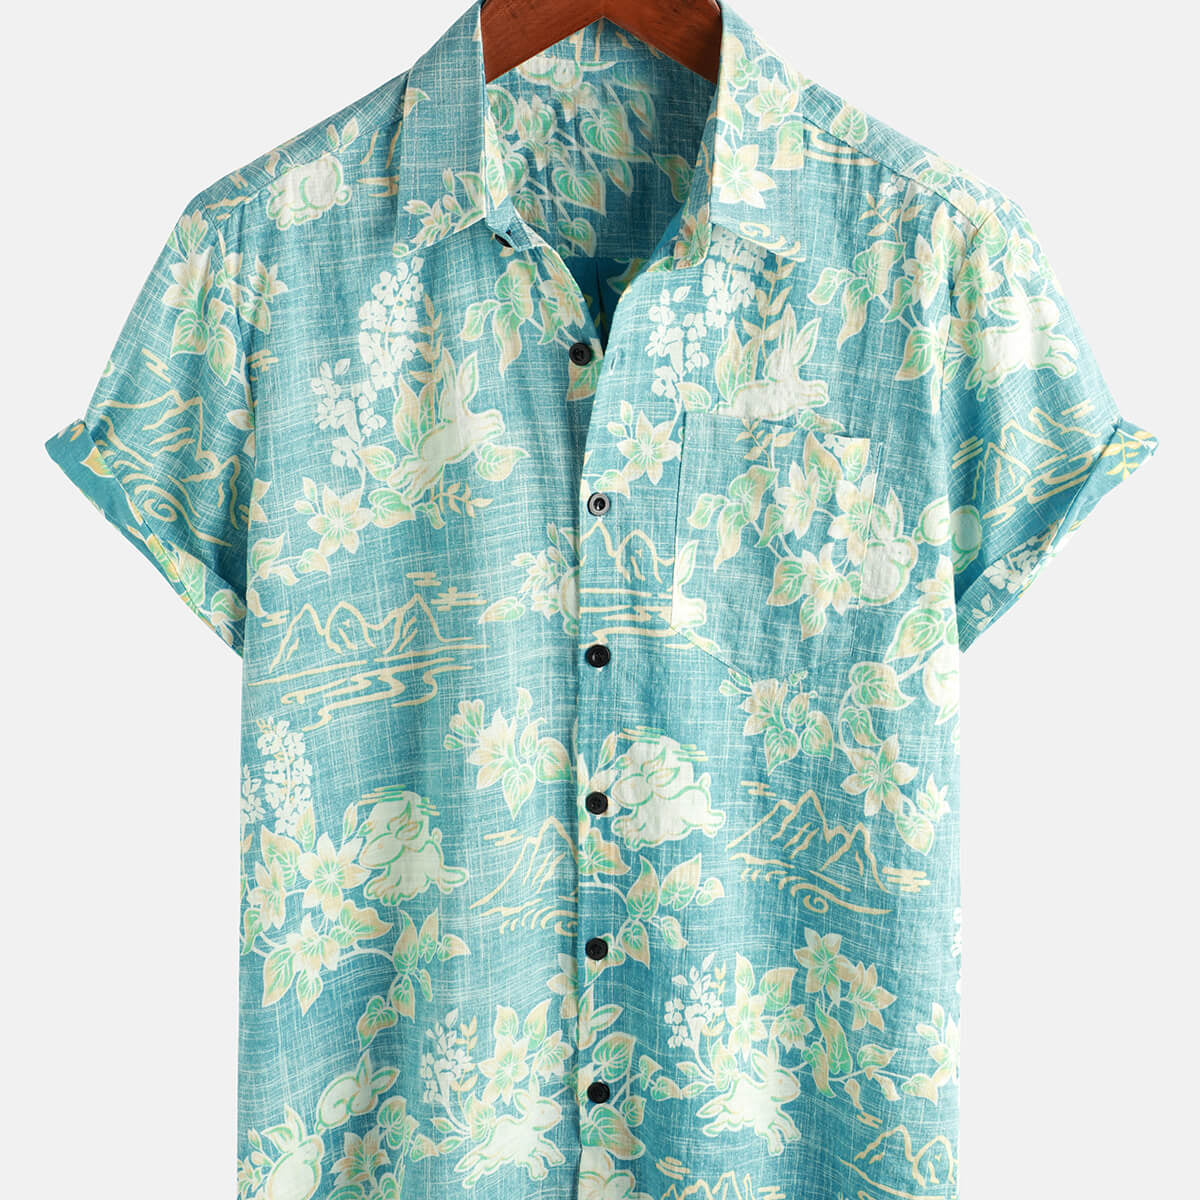 Chemise boutonnée à manches courtes pour homme avec imprimé floral tropical hawaïen vintage